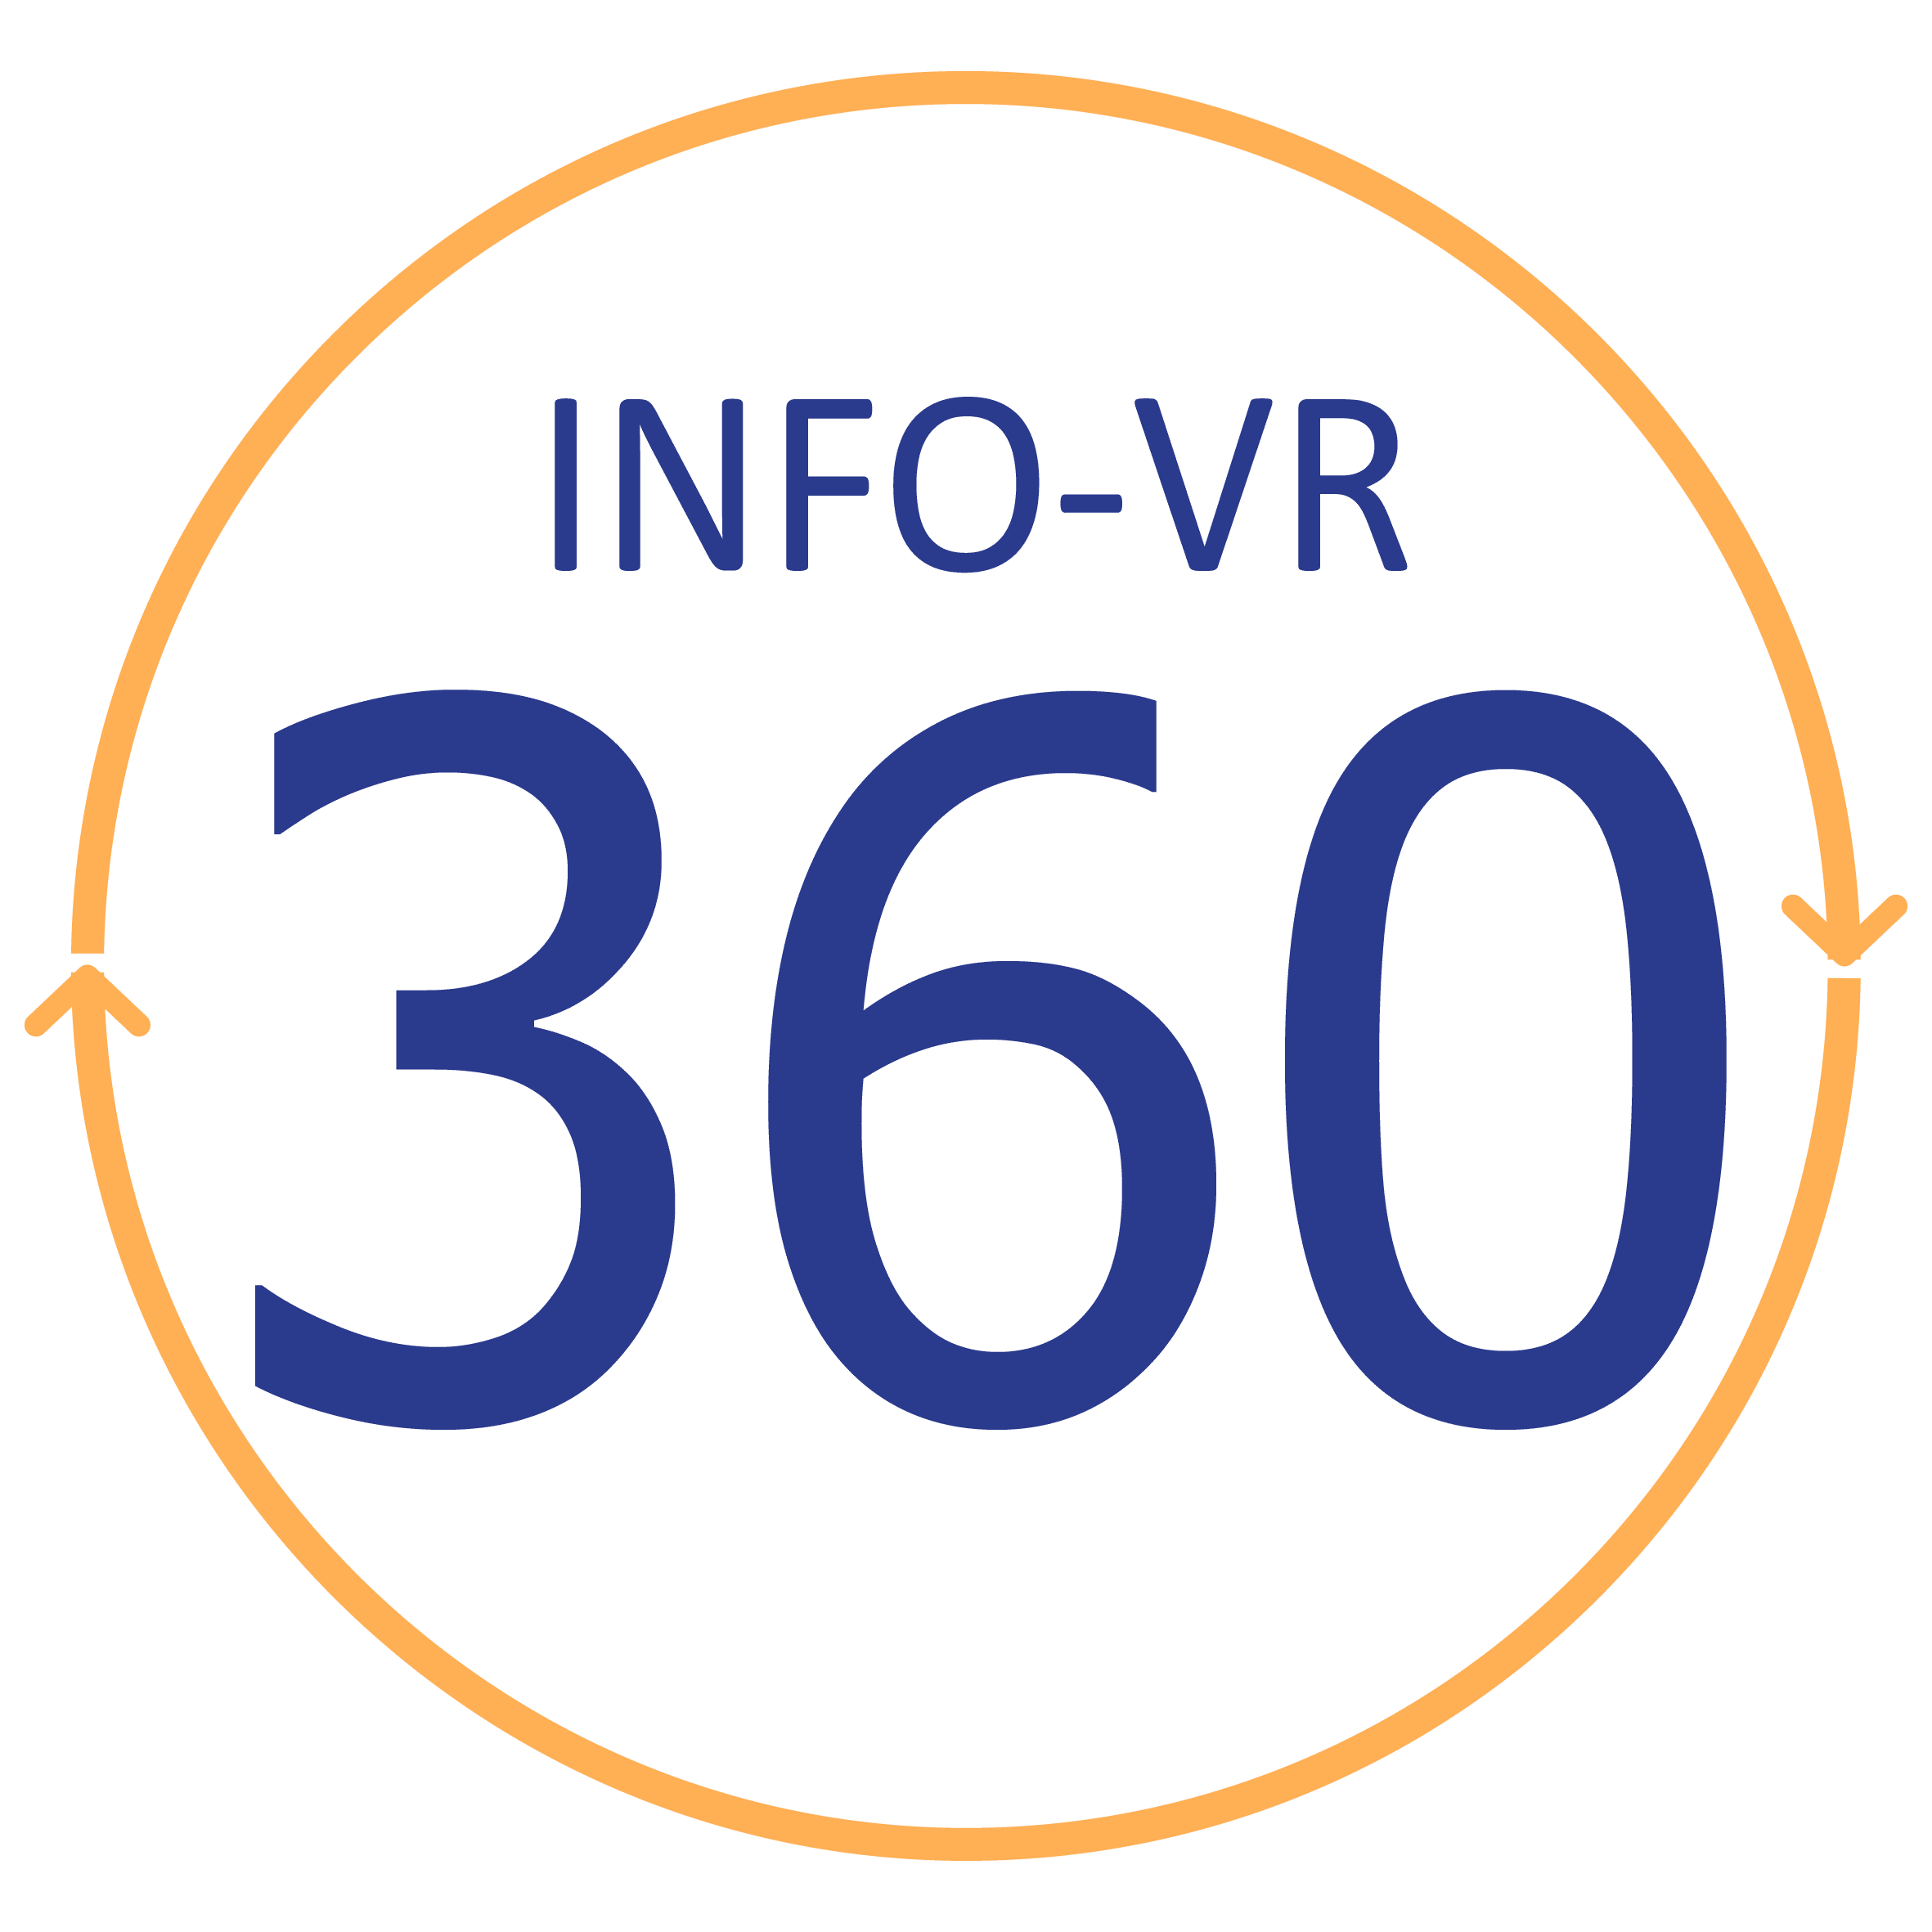 info-vr360